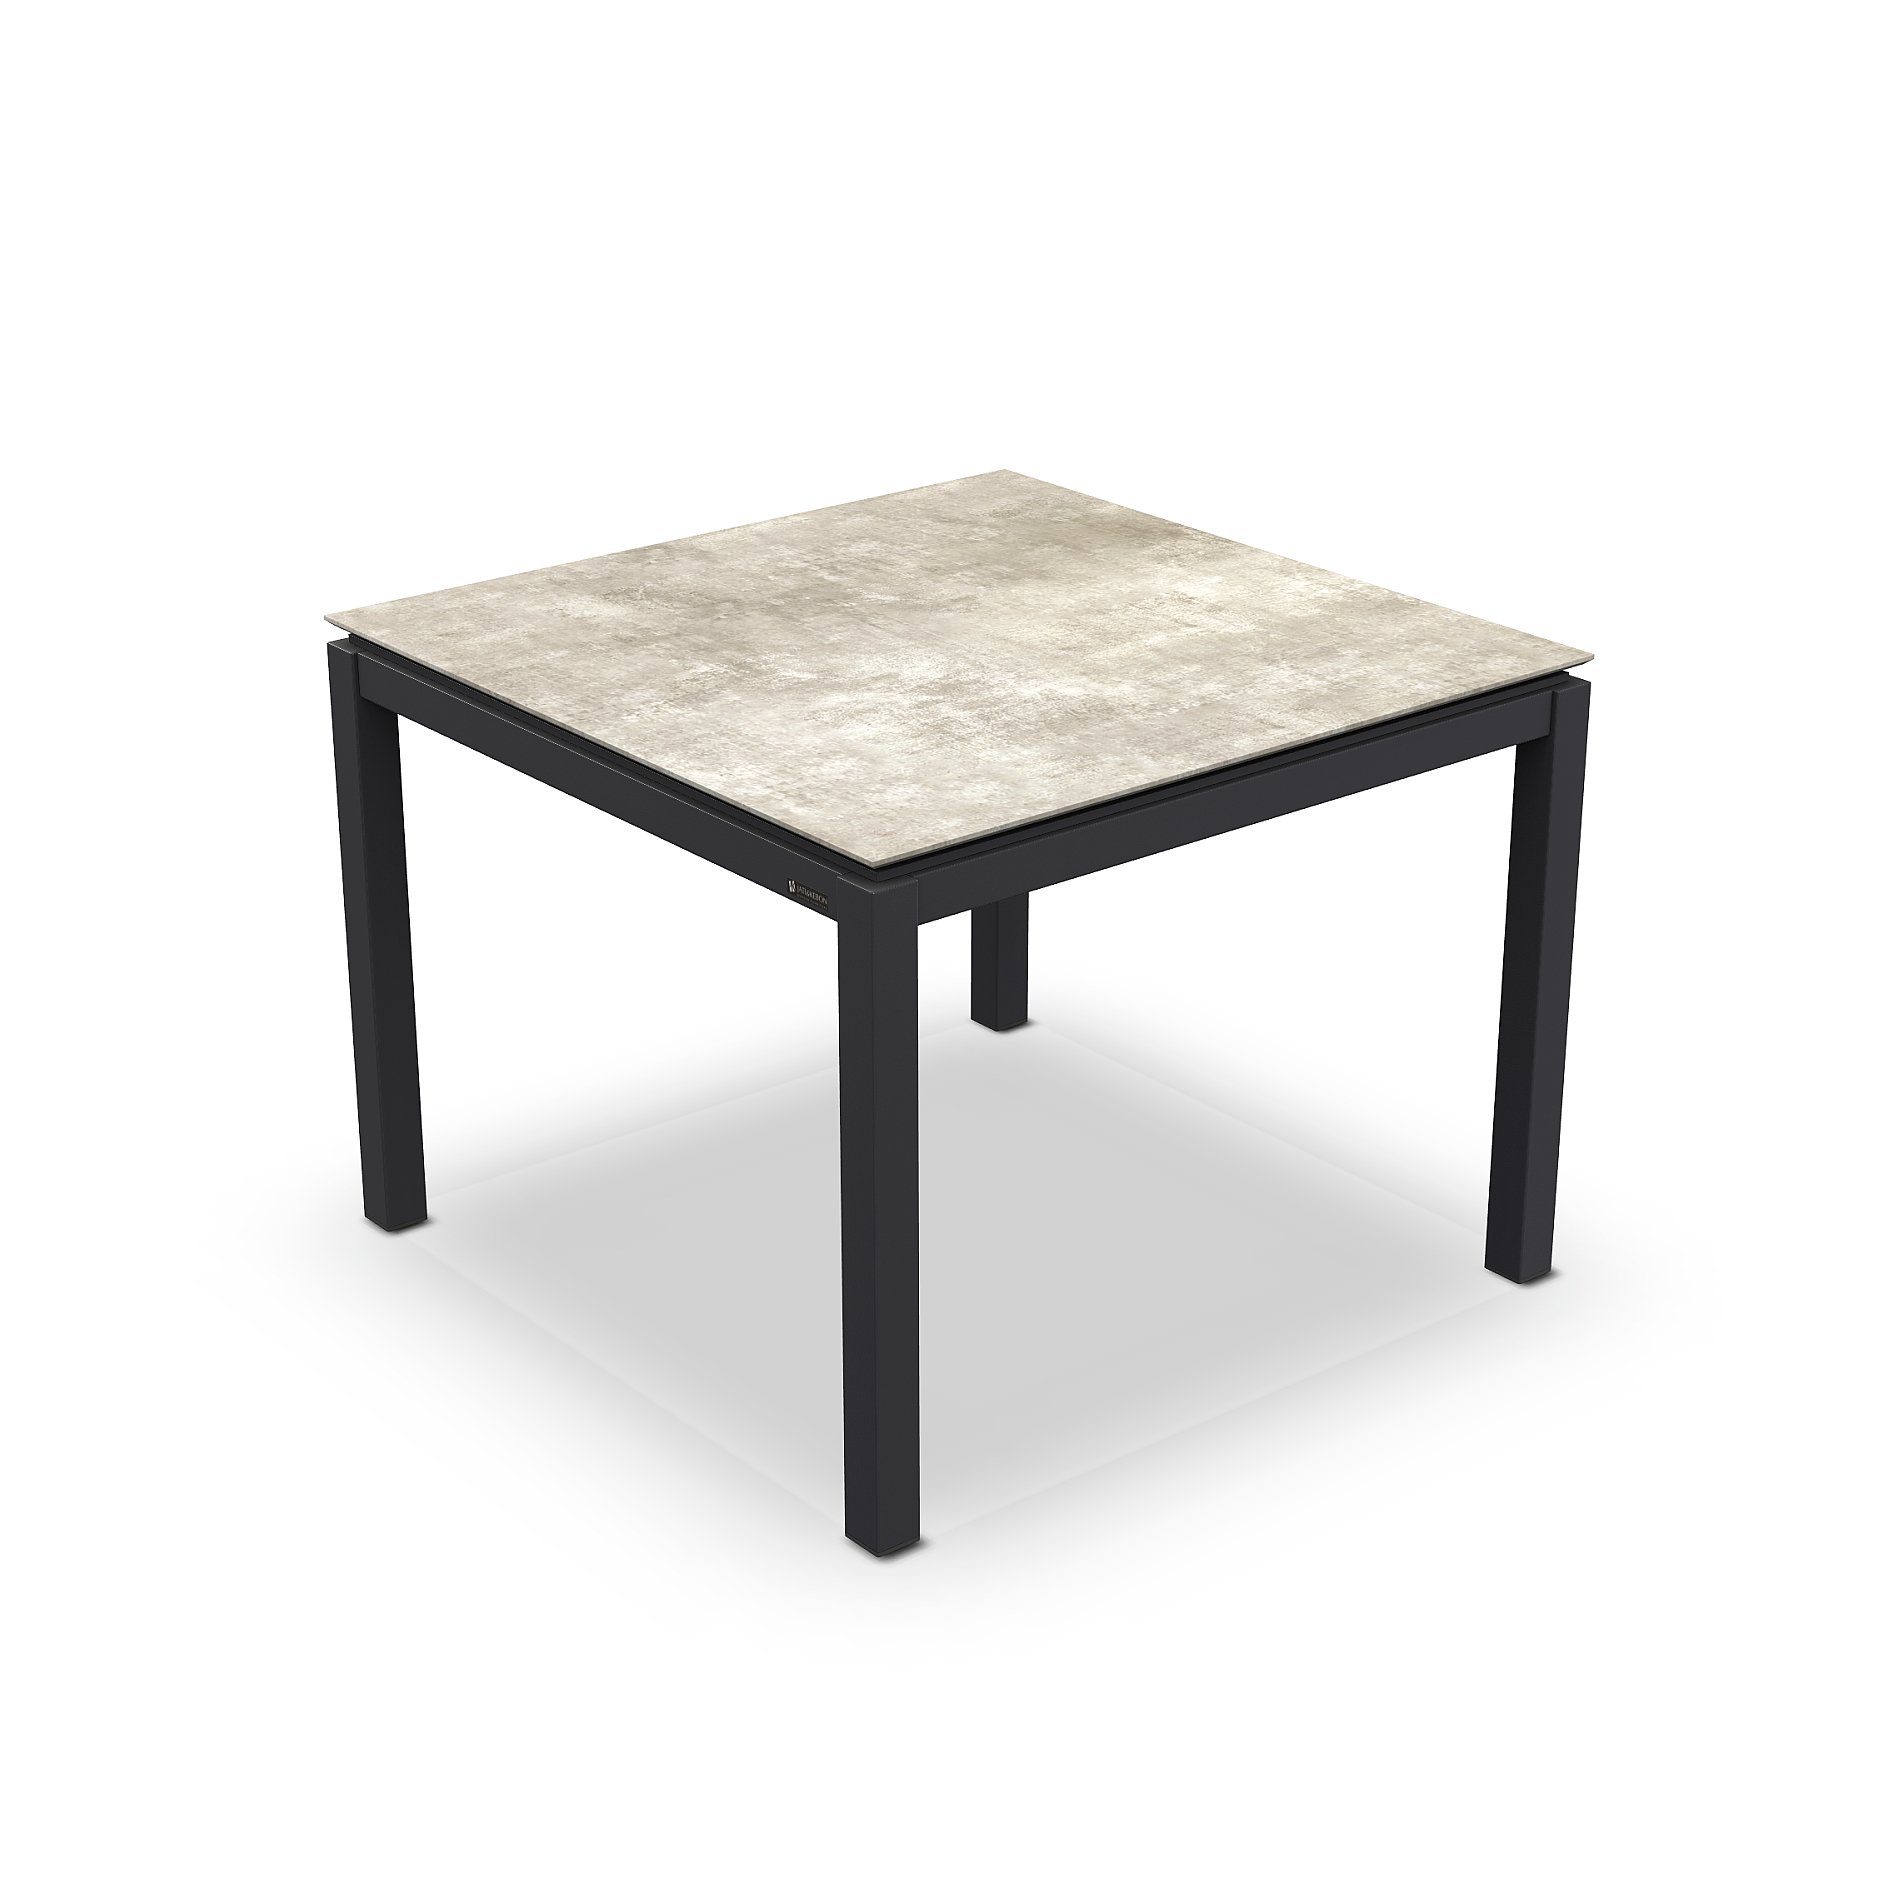 Jati&Kebon Gartentisch “Lugo“, Gestell Aluminium eisengrau, Tischplatte HPL Granit hellgrau, 90x90 cm